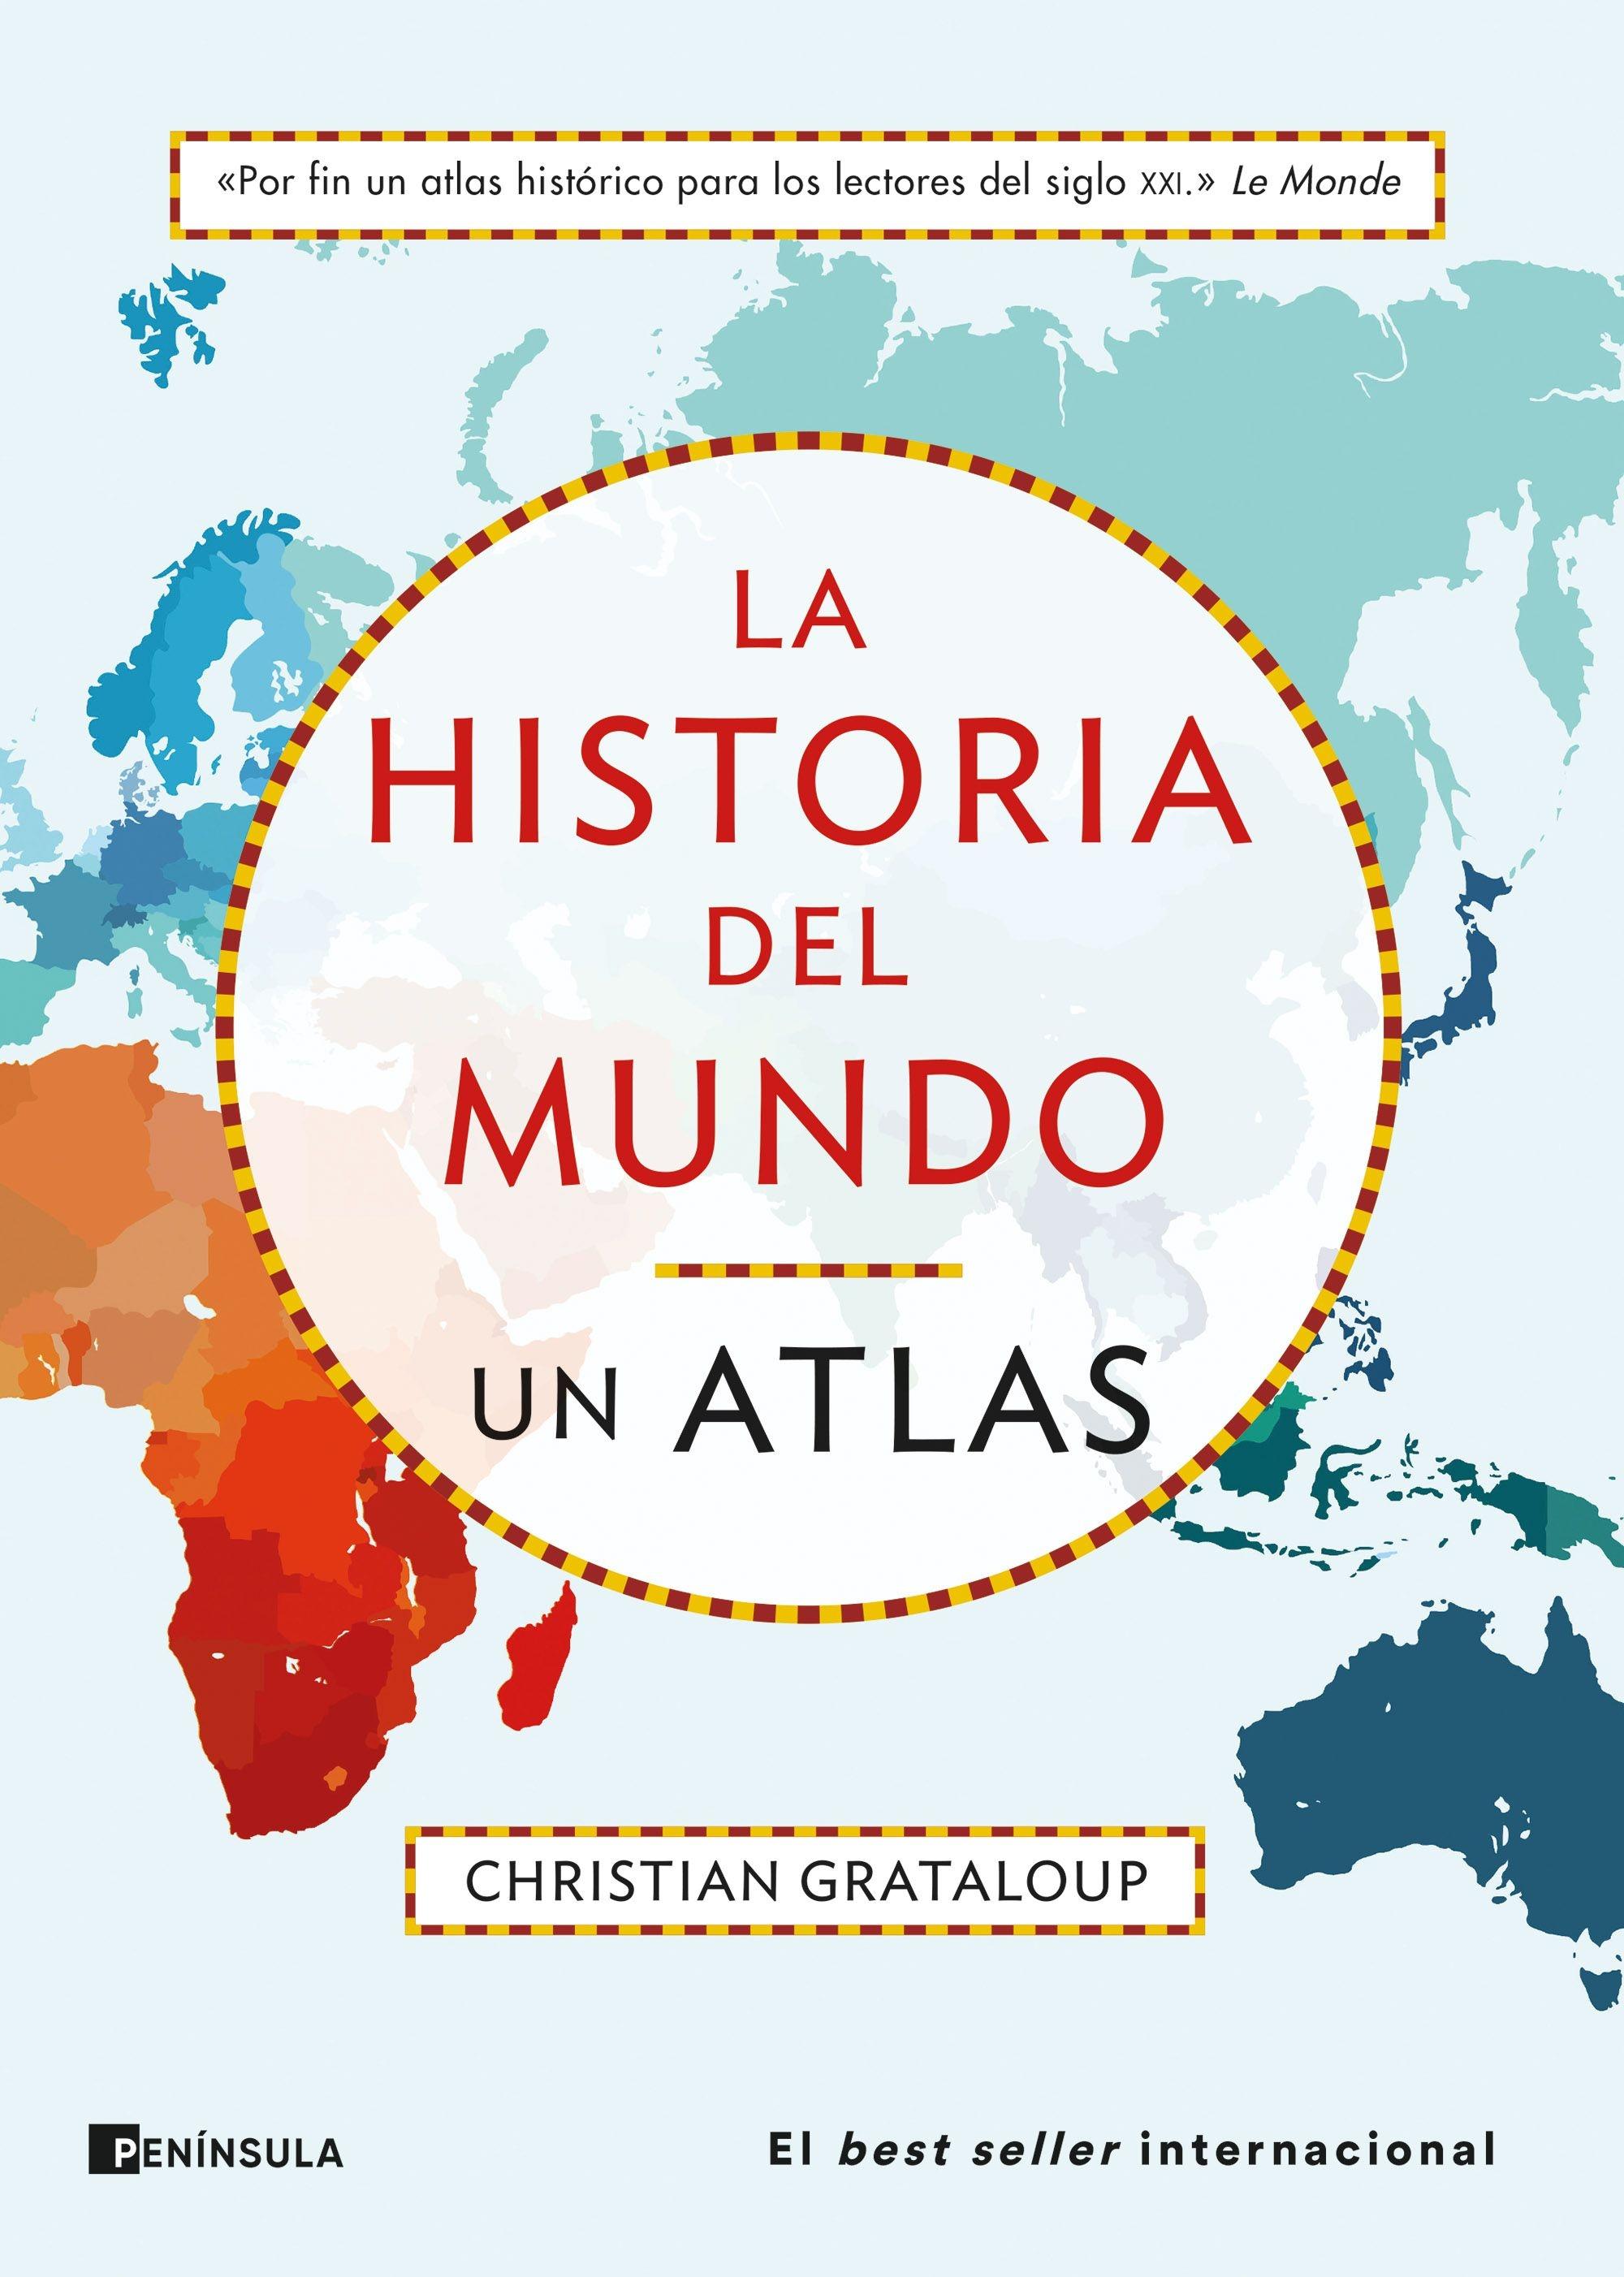 La Historia del Mundo. un Atlas "Un Recorrido desde Mesopotamia a la Actualidad en 515 Mapas"